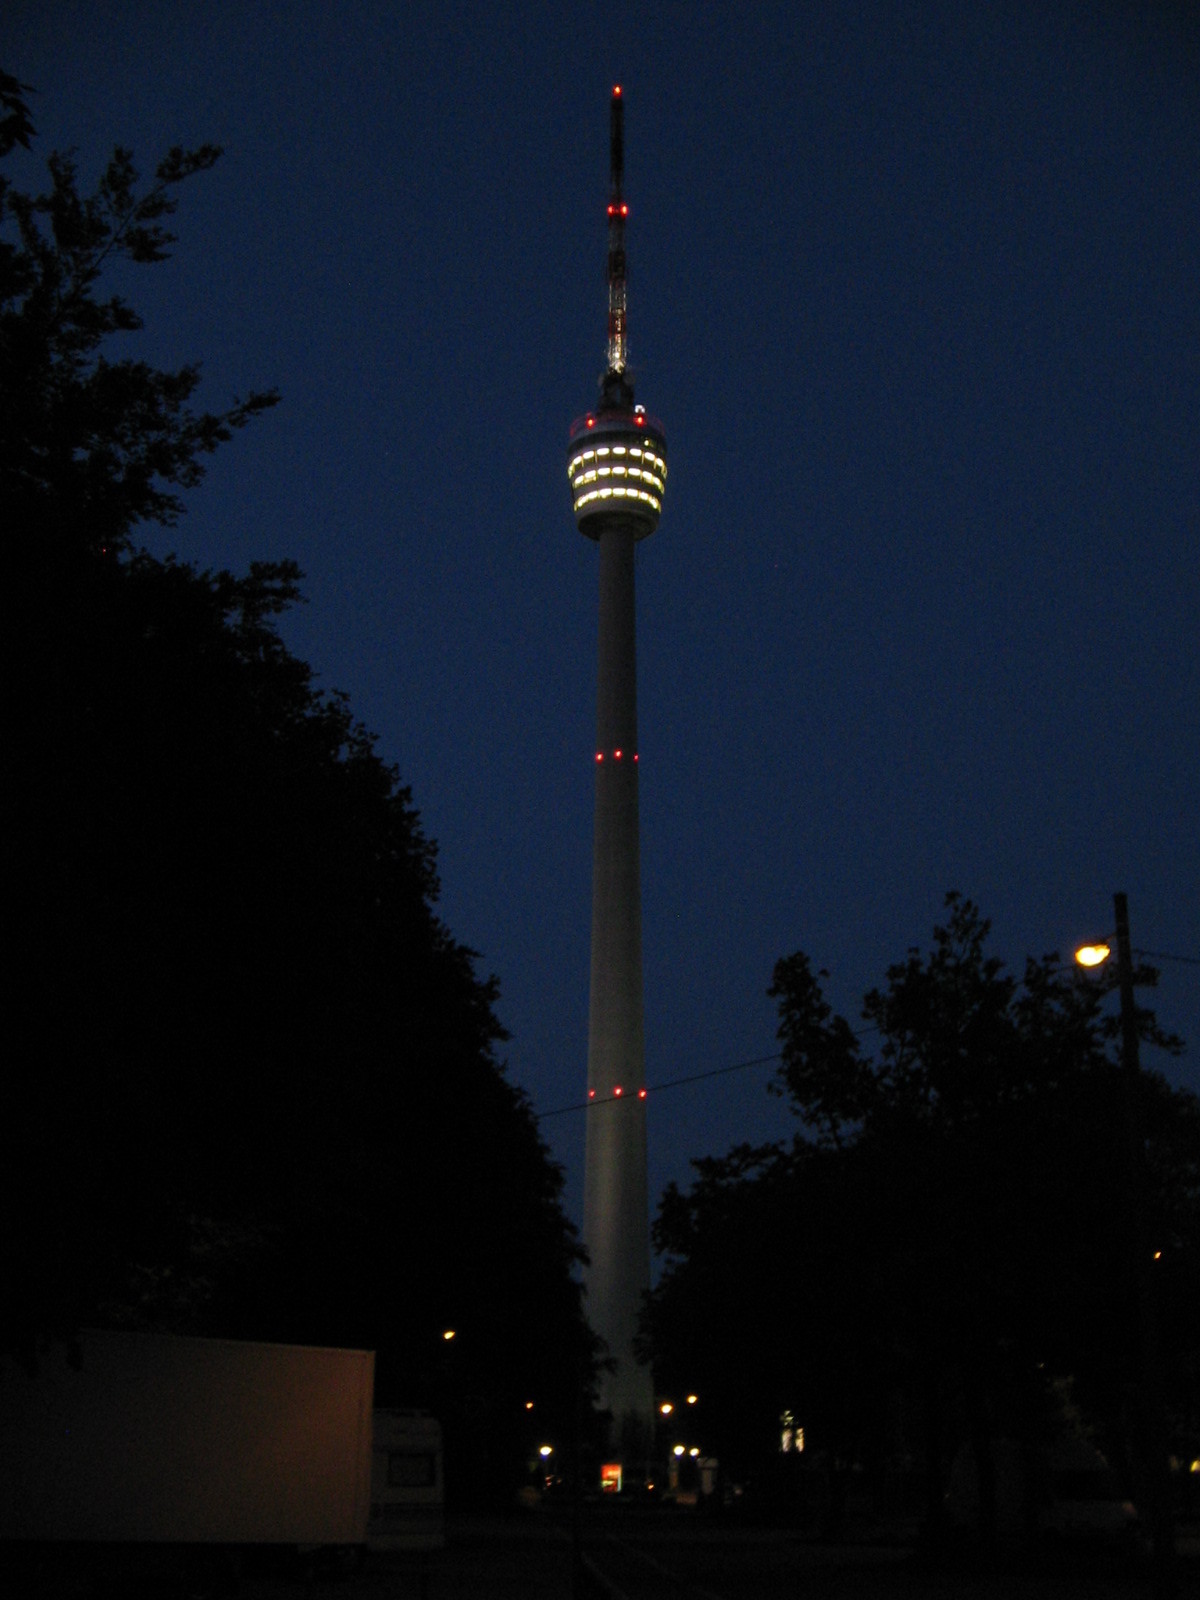 23.05.2010 - Fernsehturm Stuttgart bei Nacht - Wanderstrecke Internationale Volkswandertage Stuttgart 2010